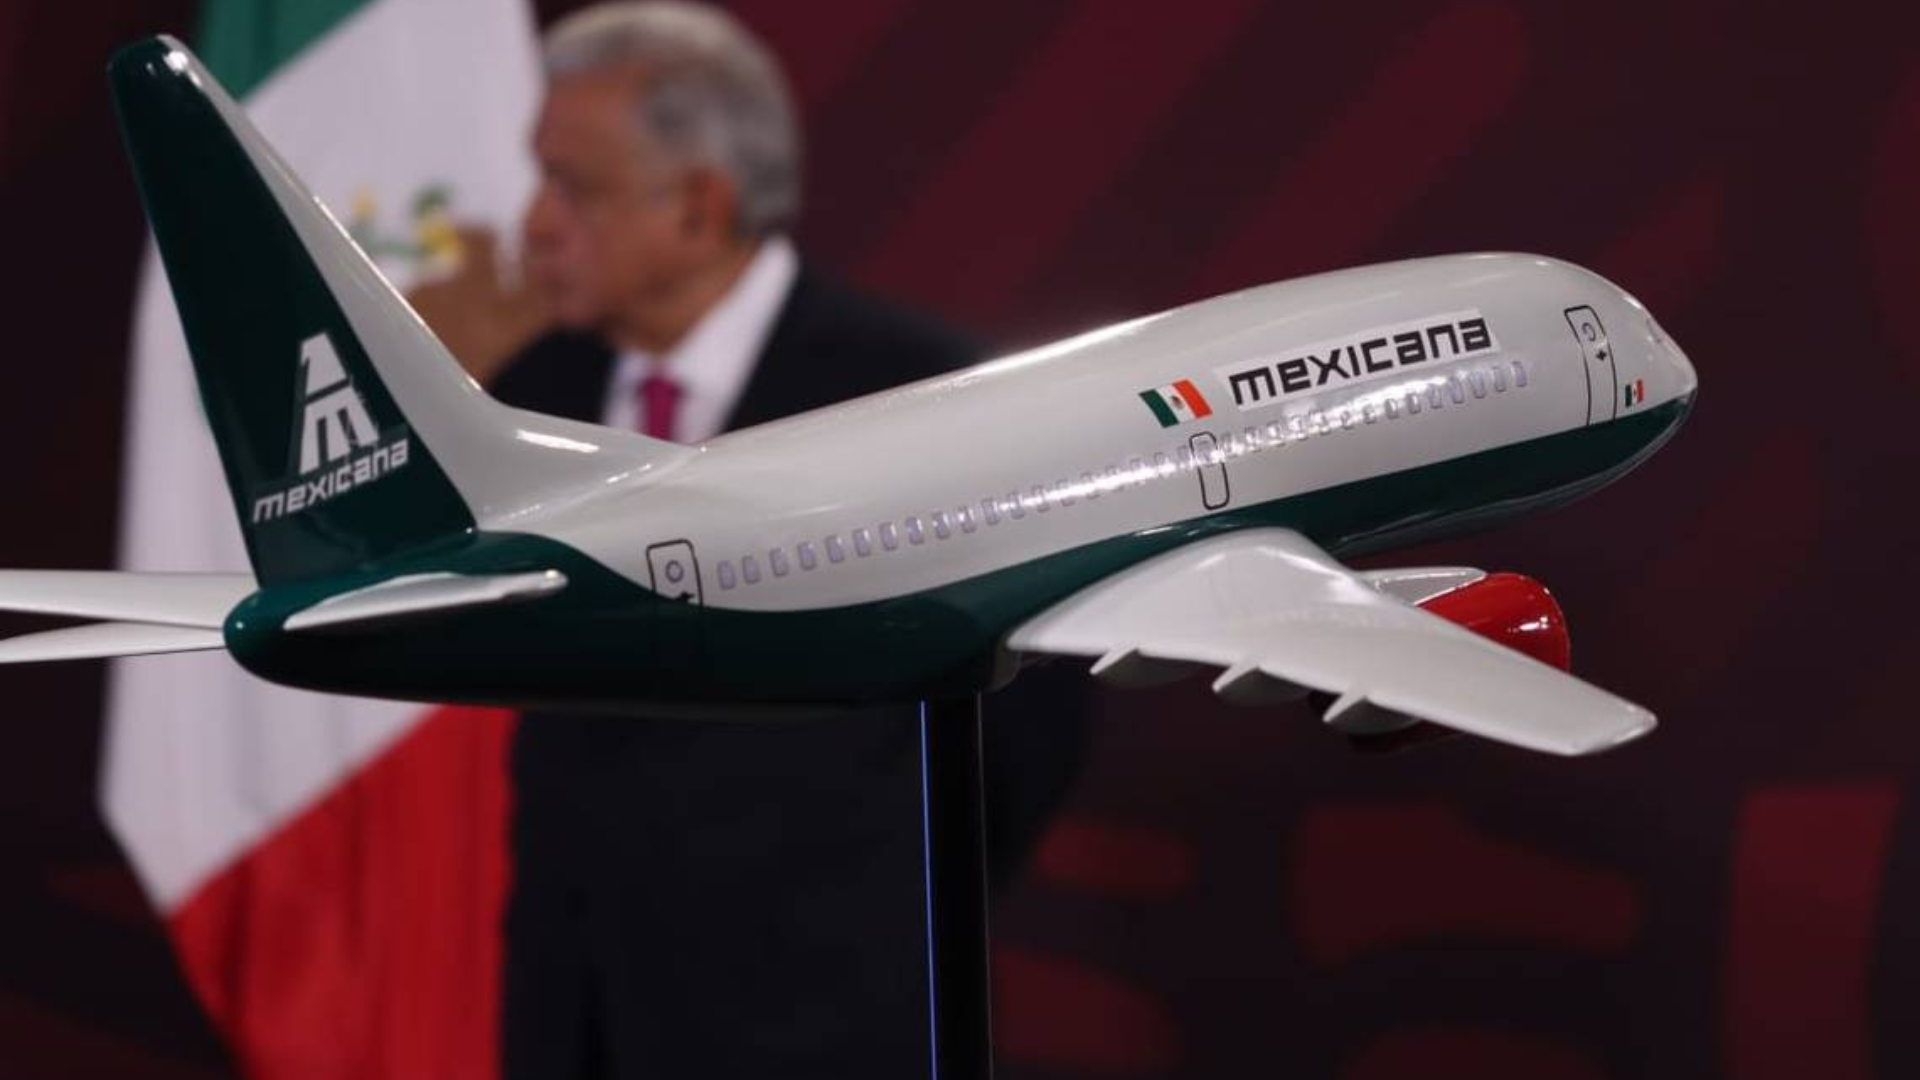 Contrademanda Mexicana de Aviación a SAT Aero Holdings por incumplimiento de contrato